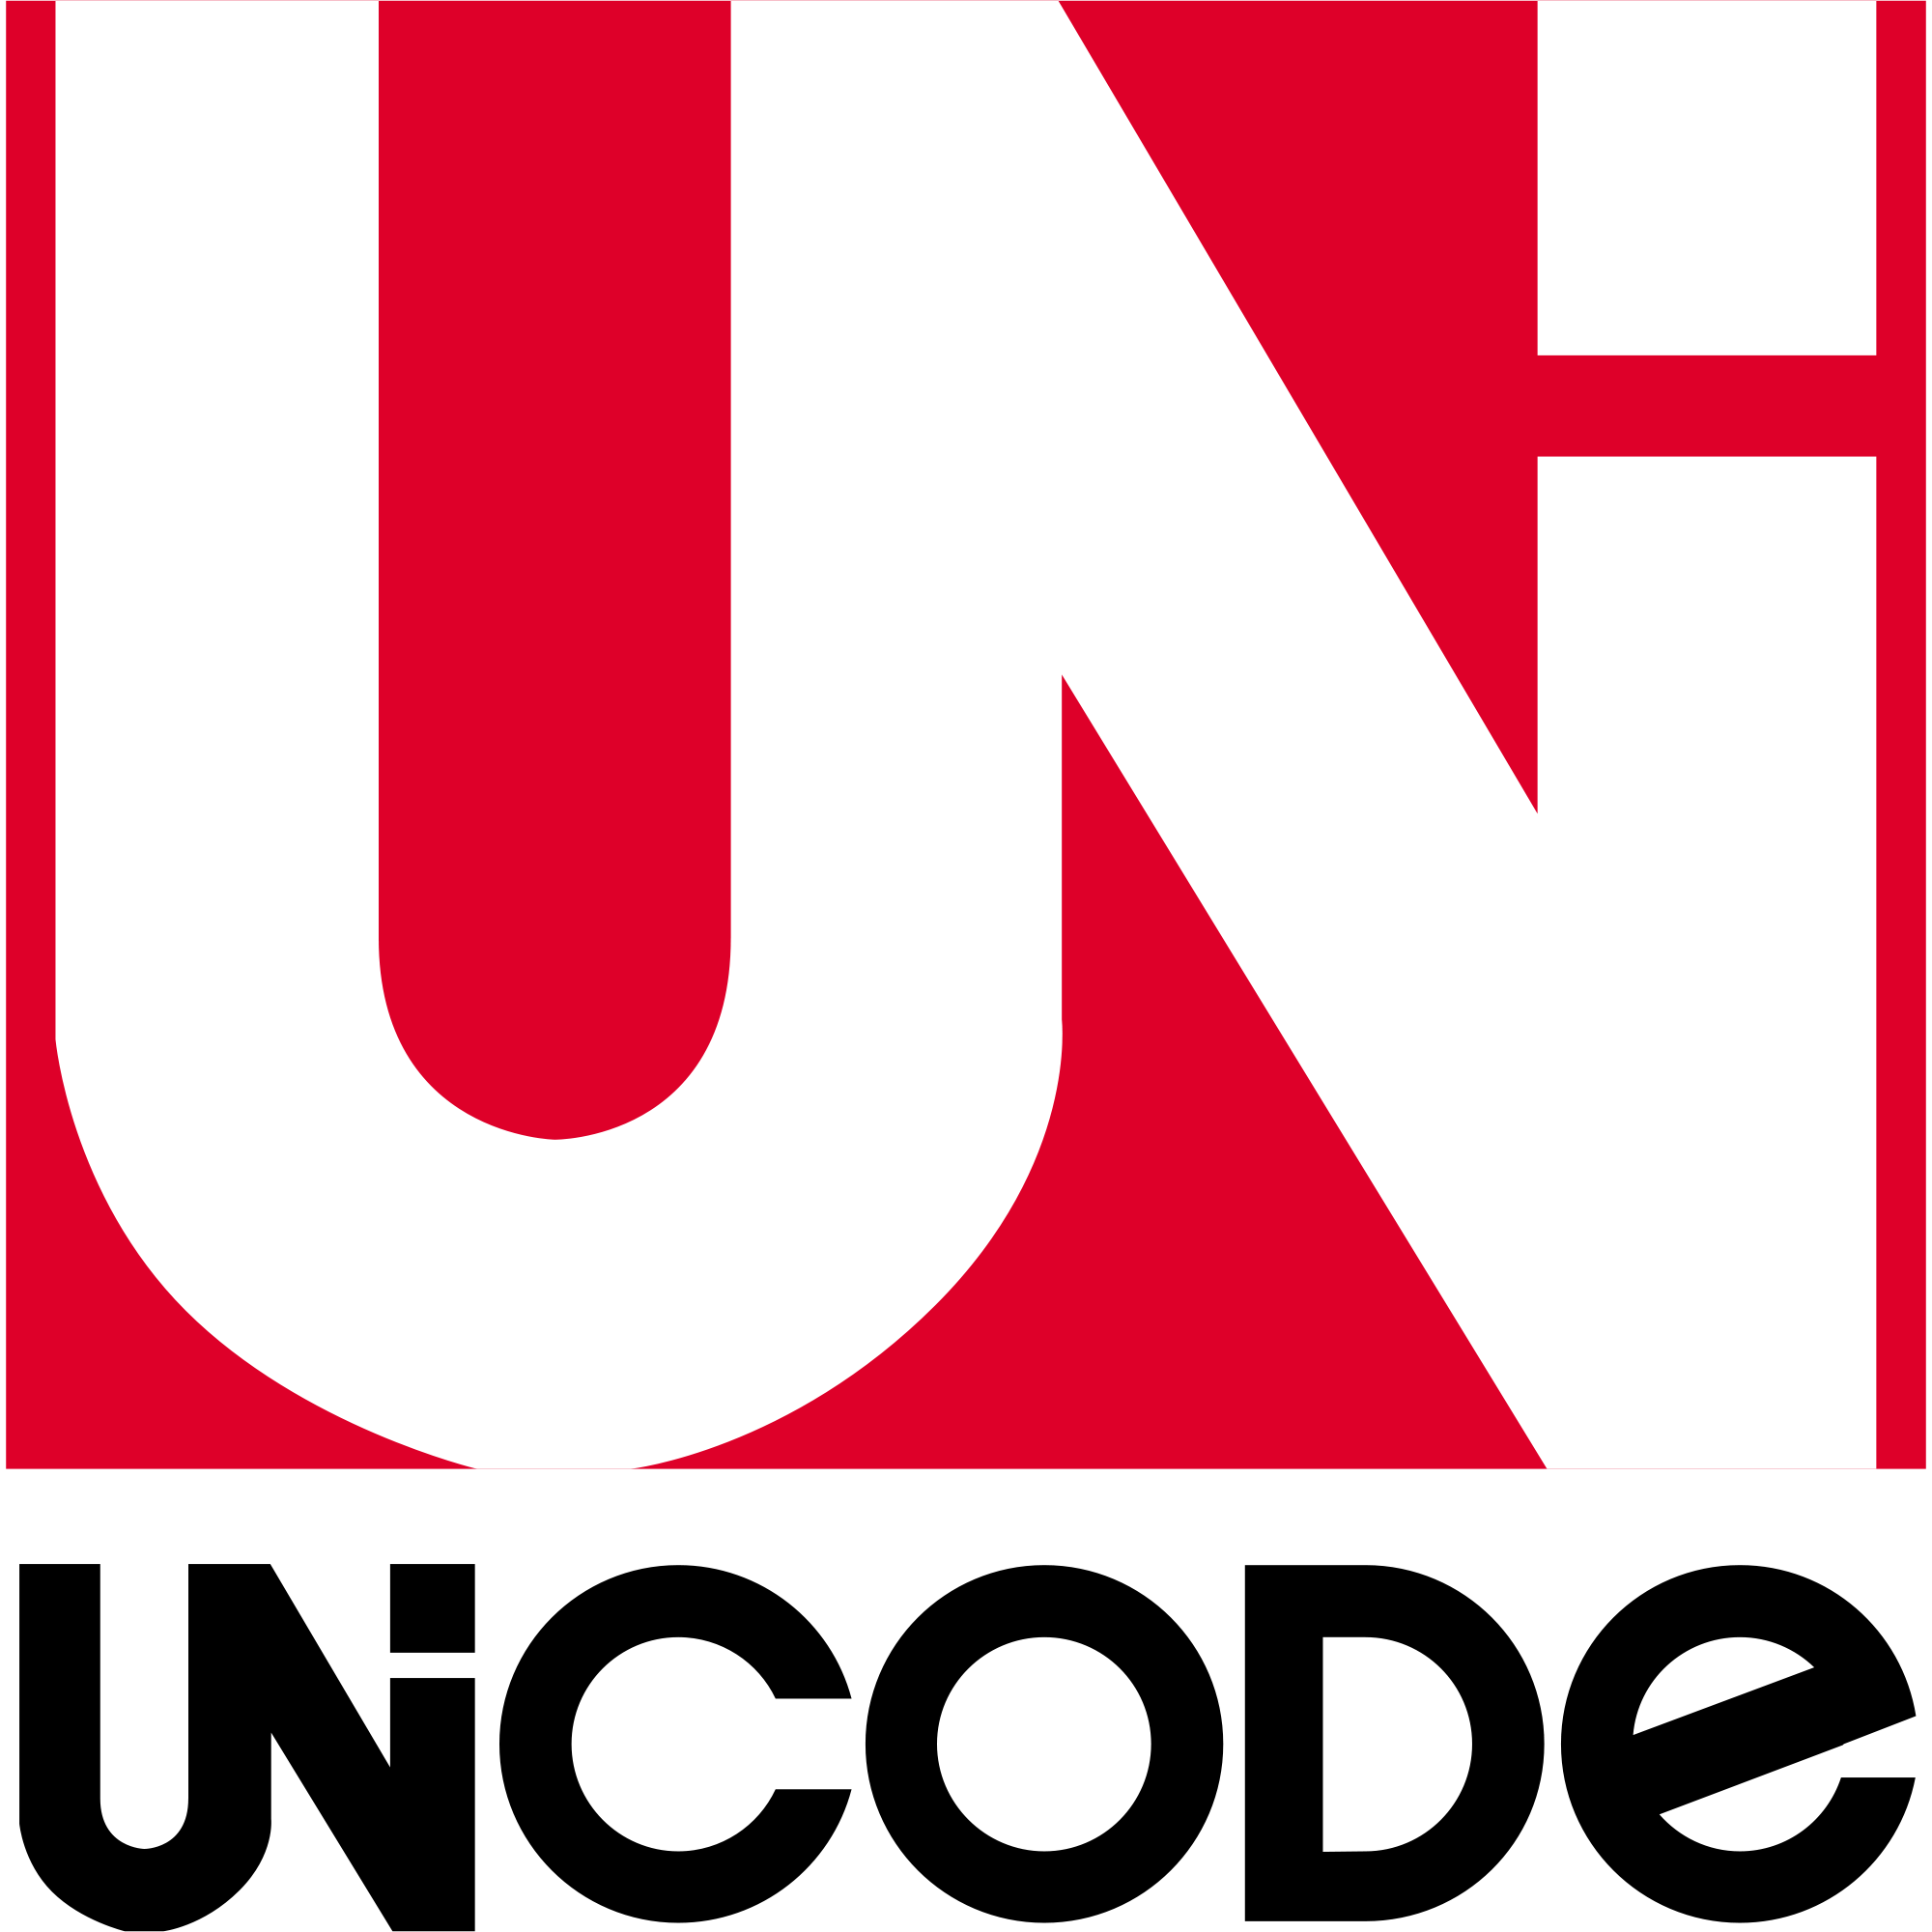 Unicode (ressourcenorientiert)